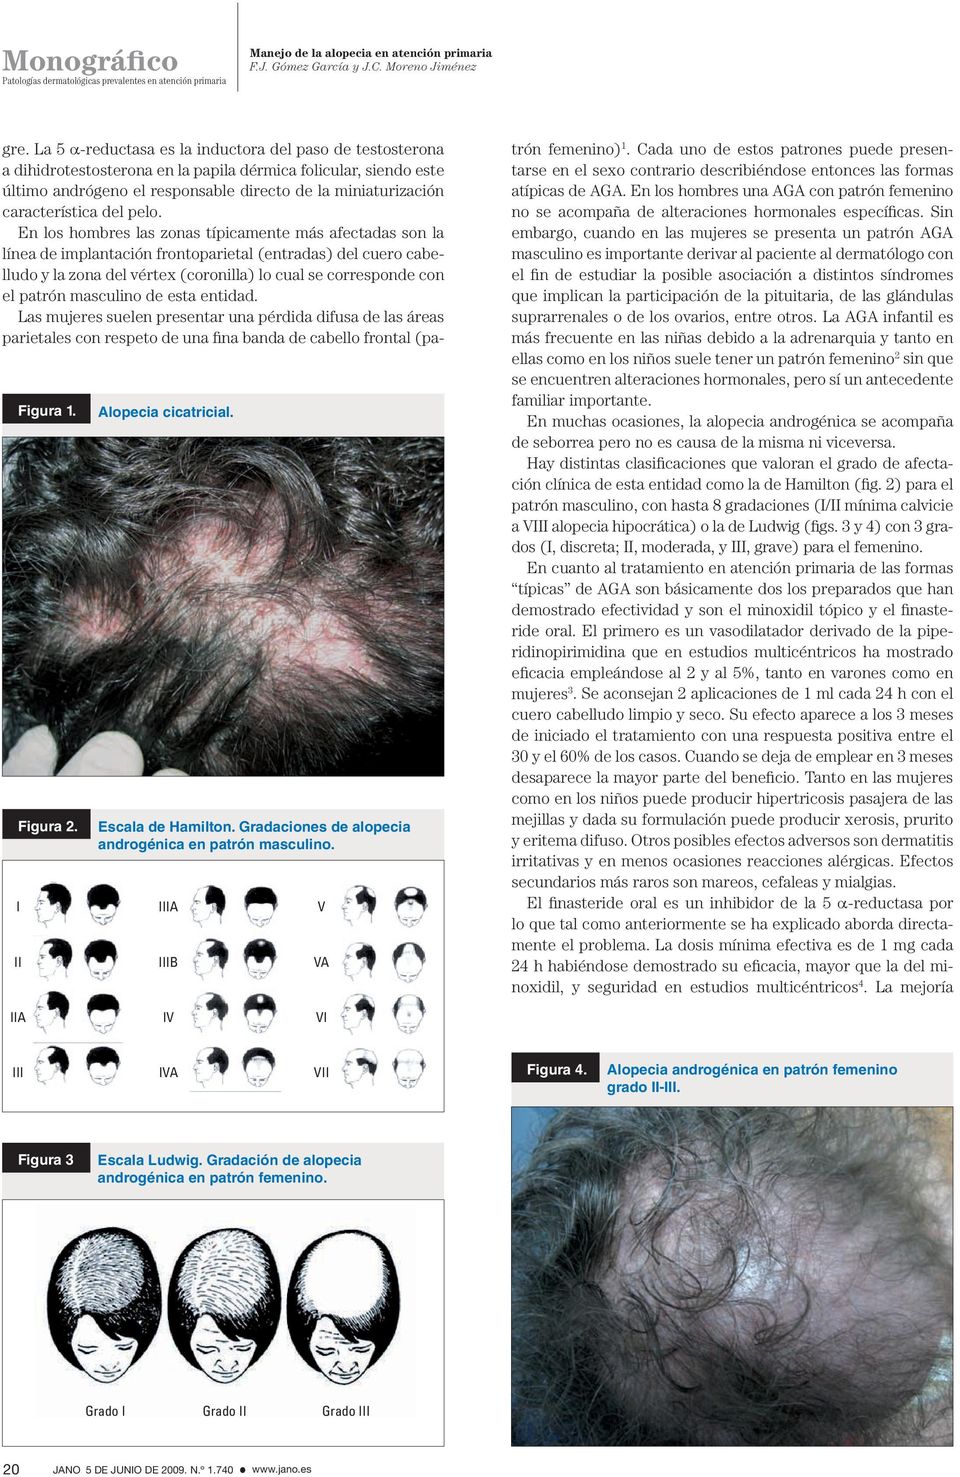 En los hombres las zonas típicamente más afectadas son la línea de implantación frontoparietal (entradas) del cuero cabelludo y la zona del vértex (coronilla) lo cual se corresponde con el patrón